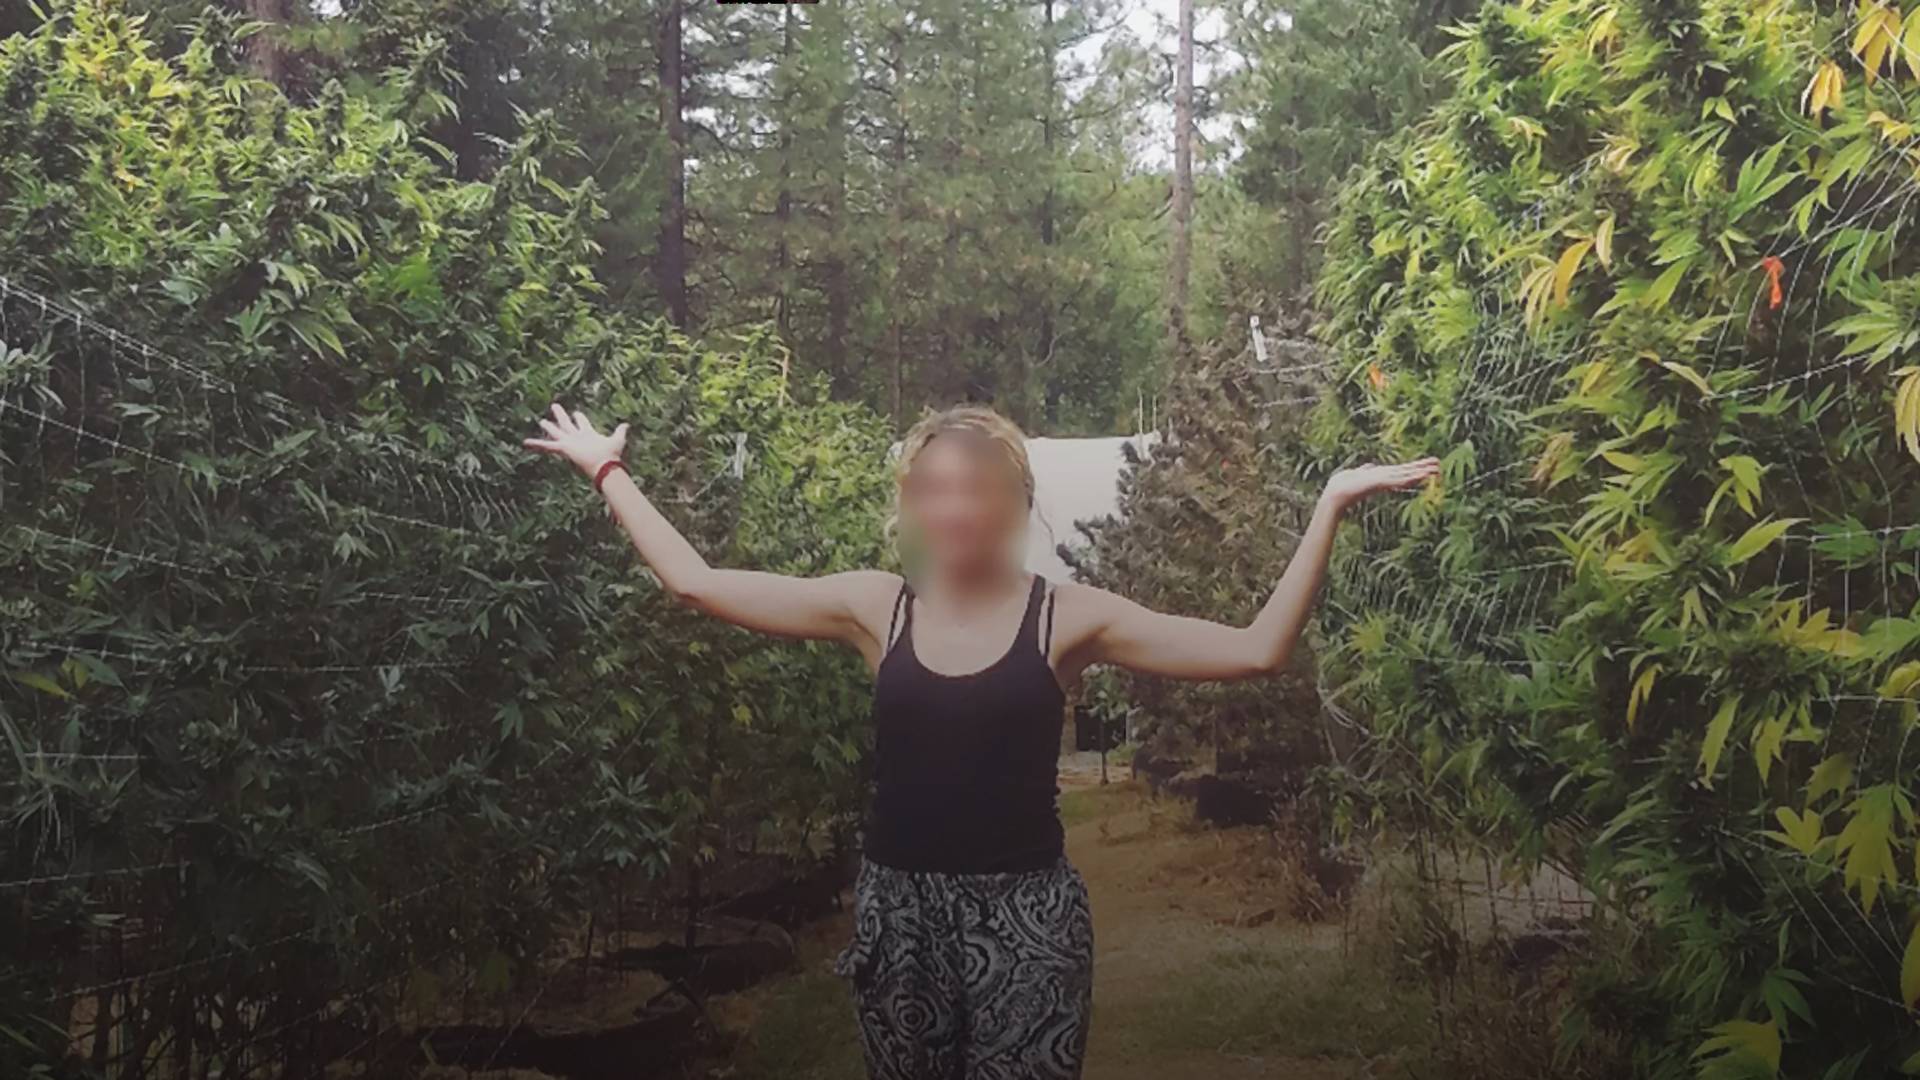 "Fél évet húztam le egy illegális kannabisz farmon" - kőkemény tapasztalatairól mesélt egy lány, aki Kaliforniában dolgozott